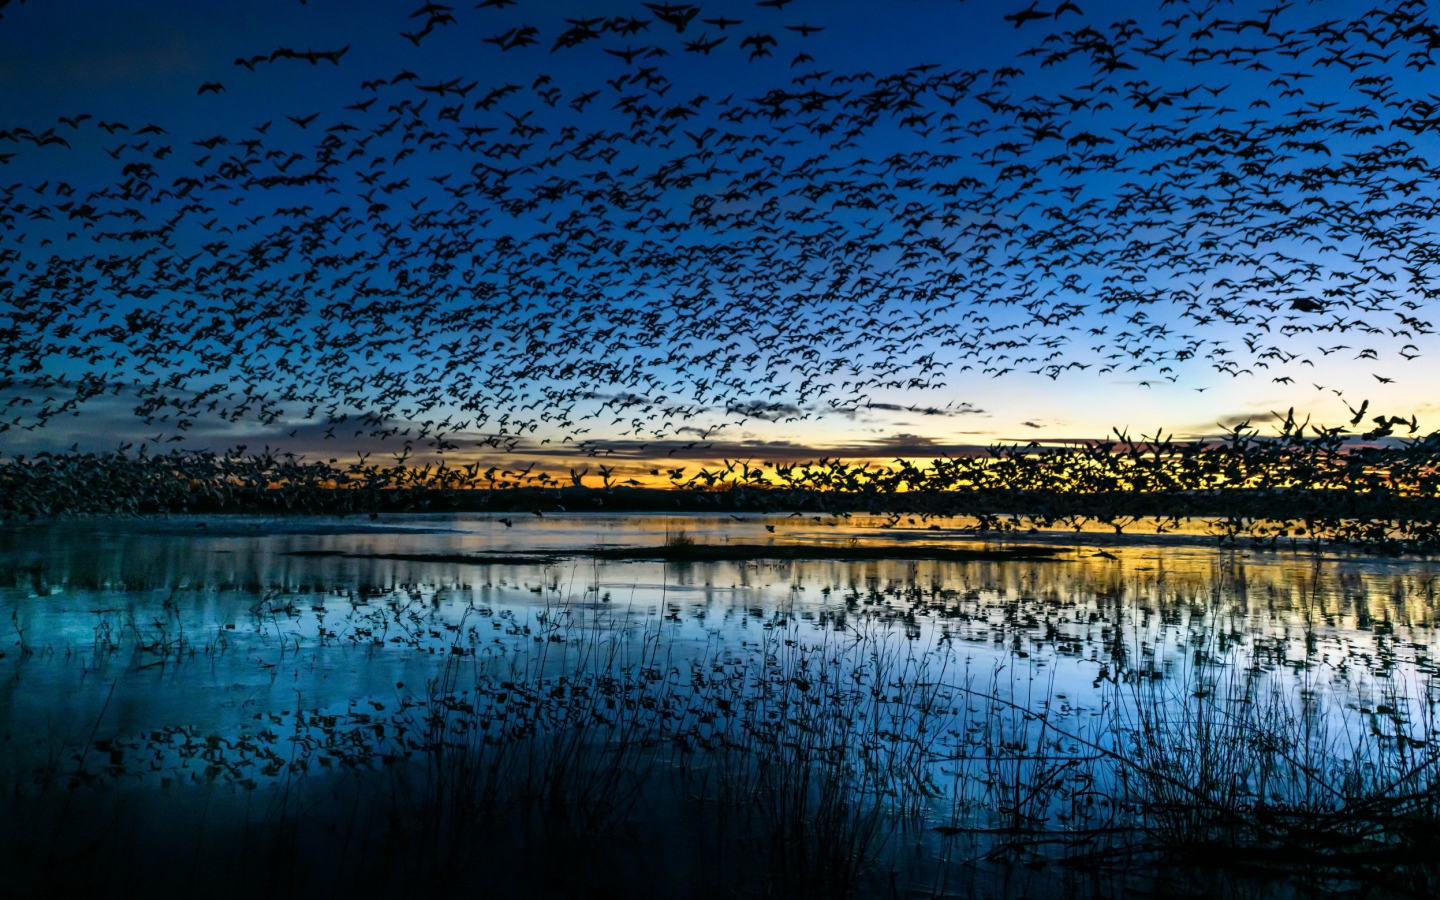 Стая птиц пролетает над прудом в сумерках